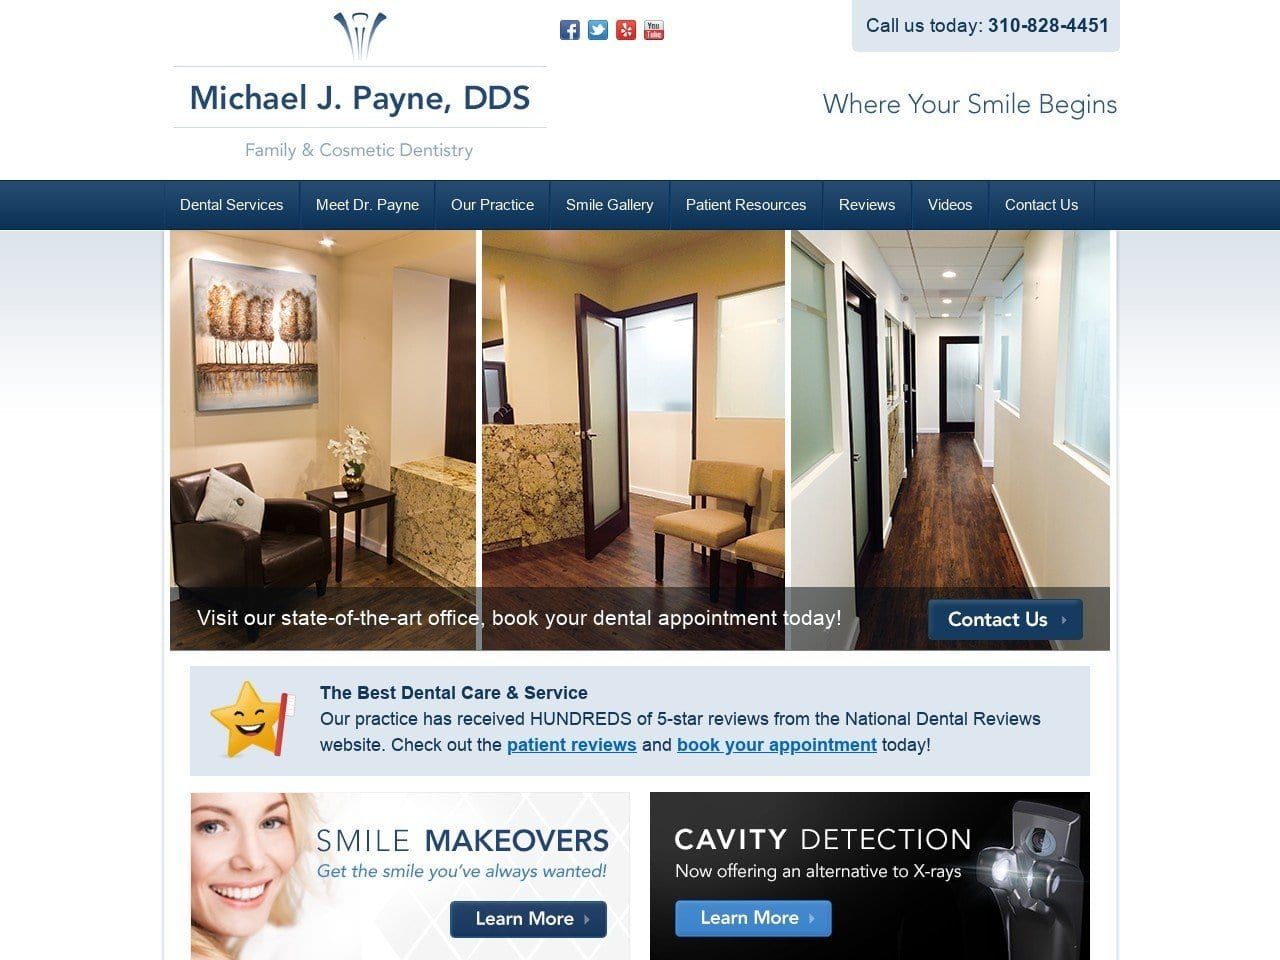 Michael J. Payne DDS Website Screenshot from michaeljpaynedds.com